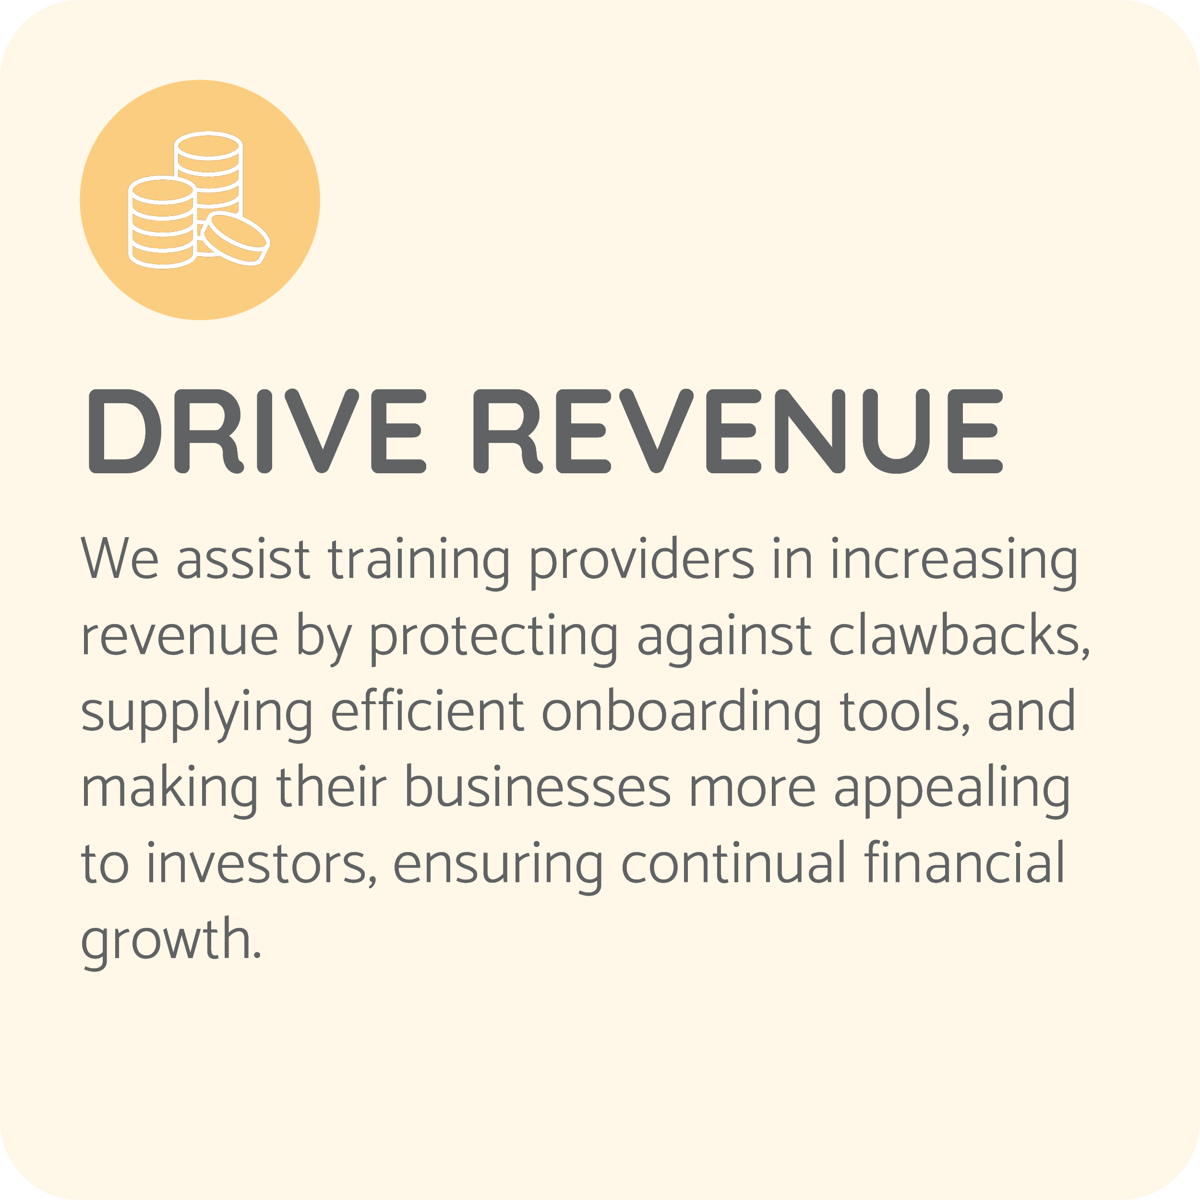 Drive revenue